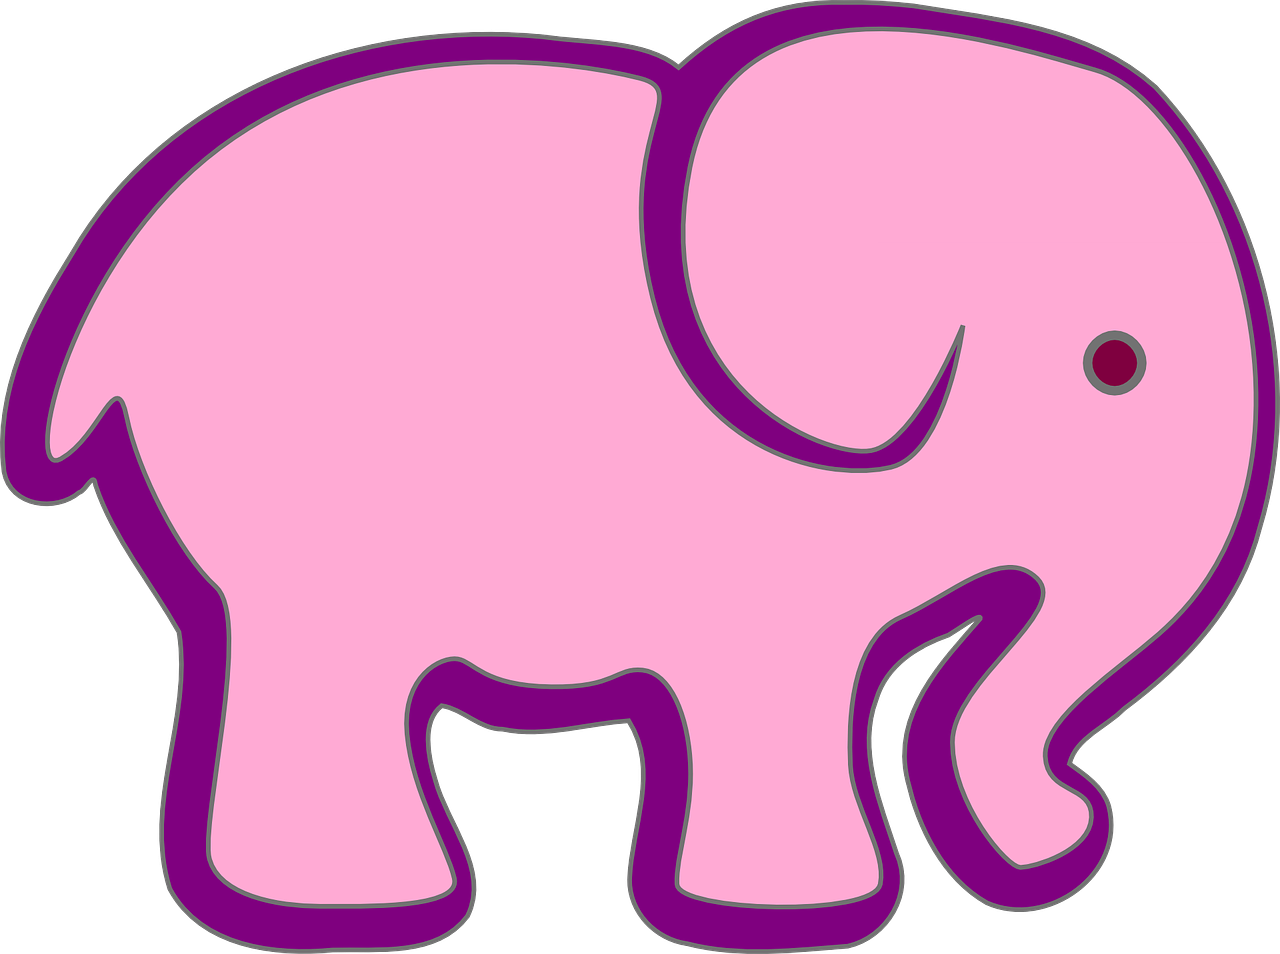 Er is behoefte aan transactie Correspondent De roze olifant... — Mama Vita